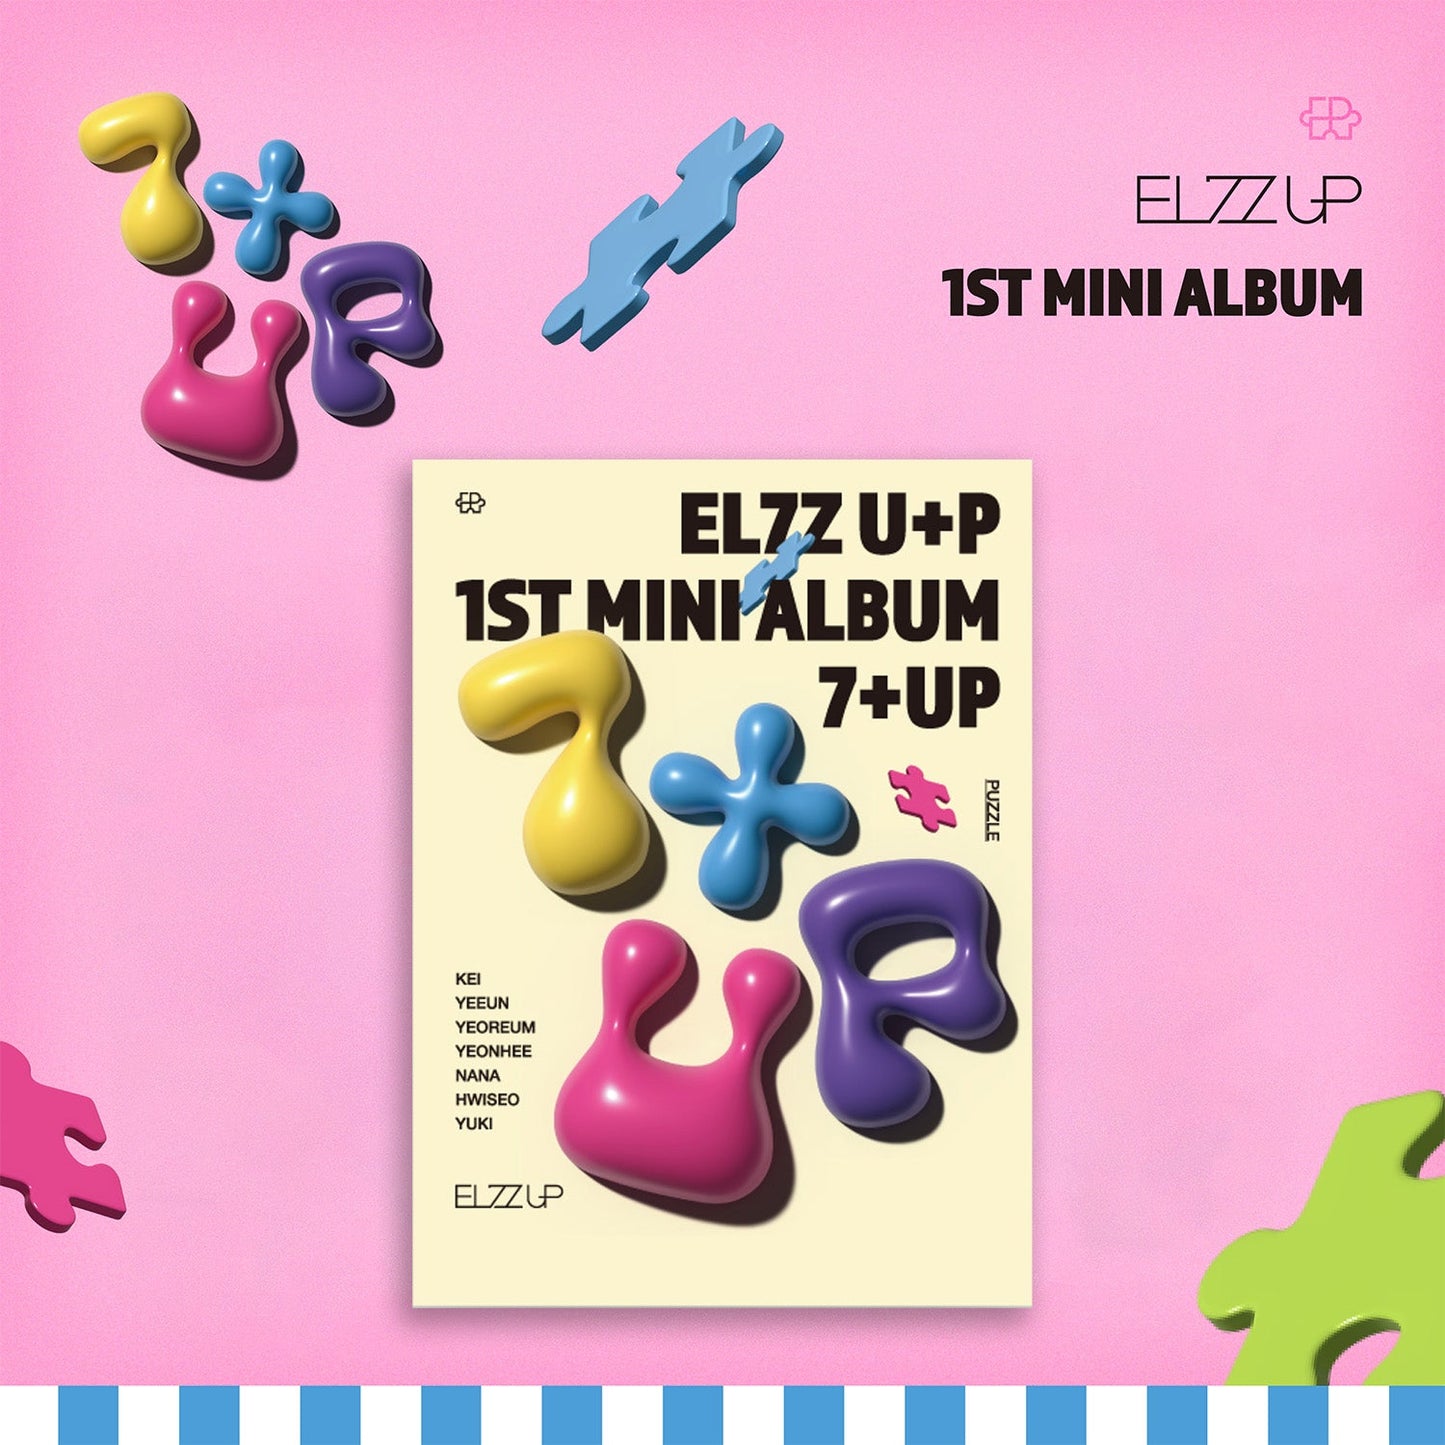 EL7Z UP 1ST MINI ALBUM '7+UP' PUZZLE VERSION COVER